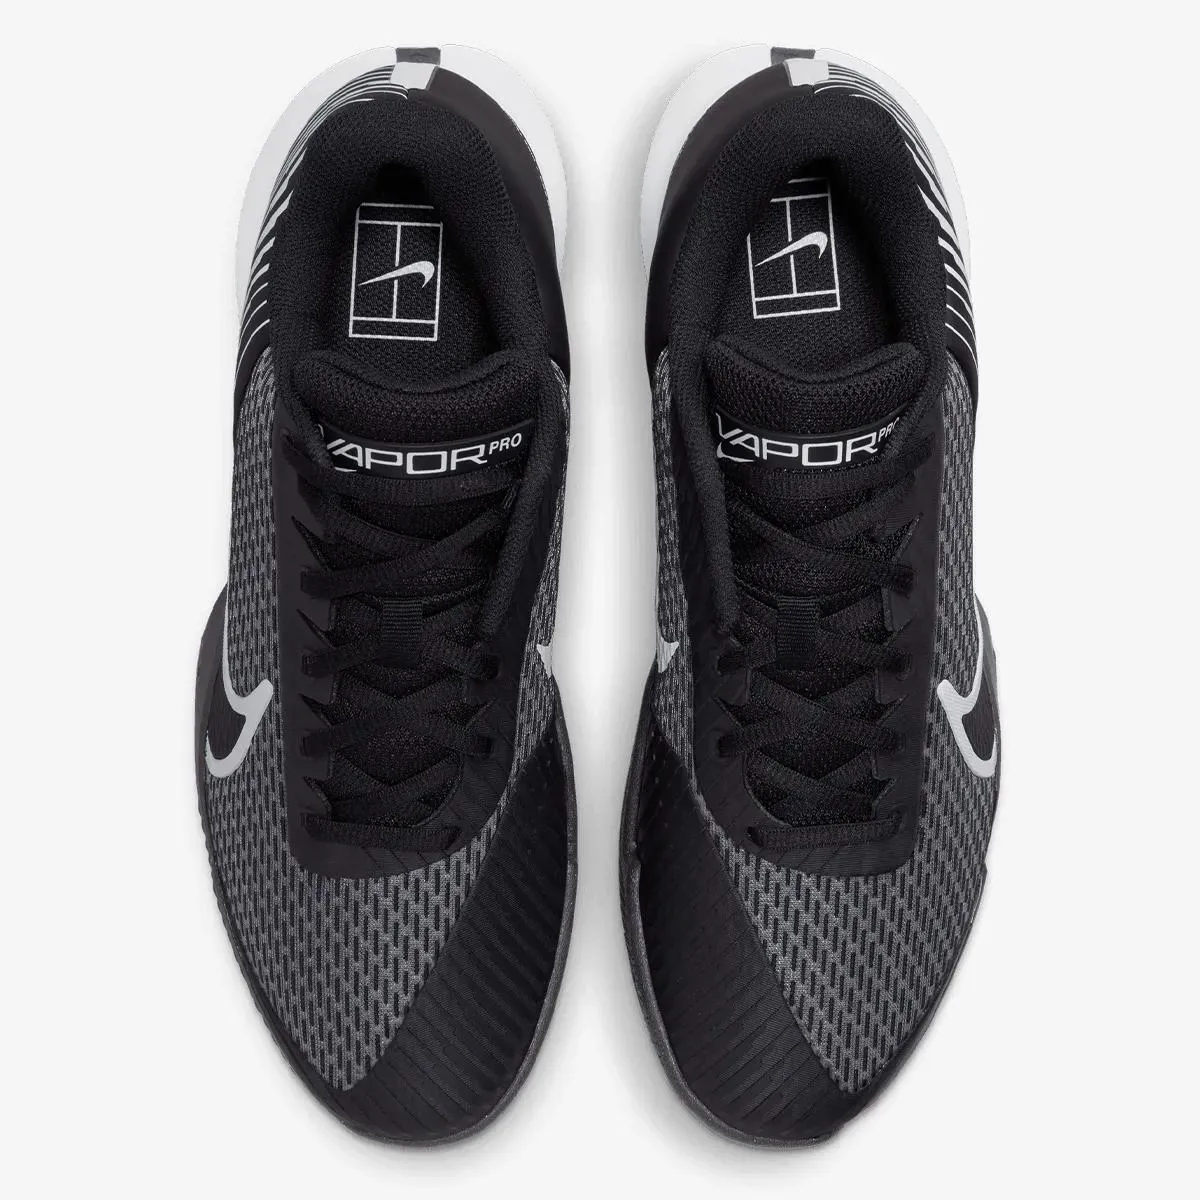 Nike NikeCourt Air Zoom Vapor Pro 2 